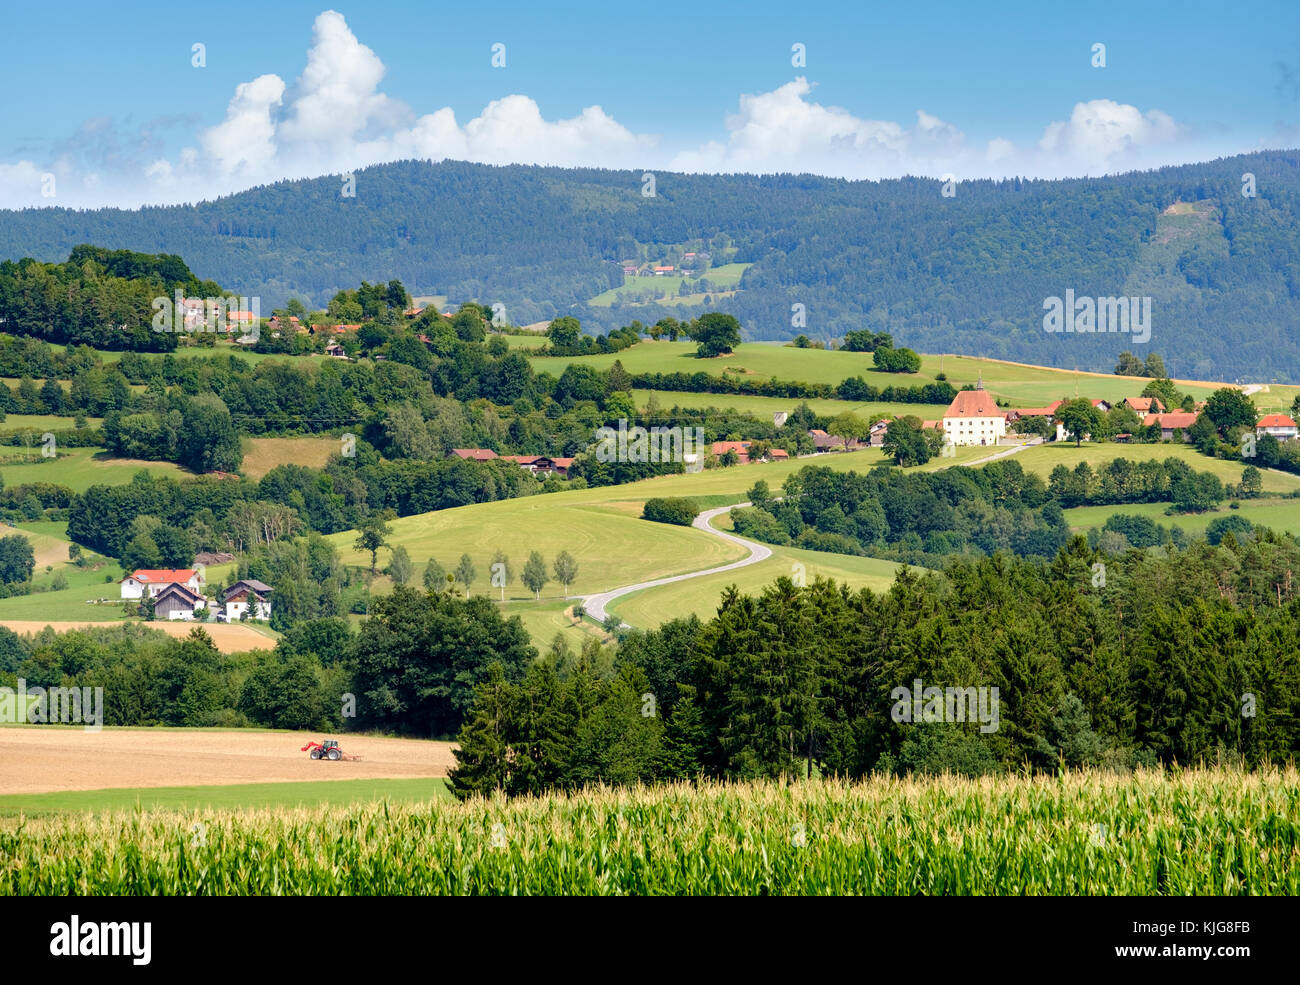 Kinsach-Tal mit Schloss Herrnfehlburg, bei Rattiszell, Bayerischer Wald, Niederbayern, Bayern, Deutschland Foto Stock